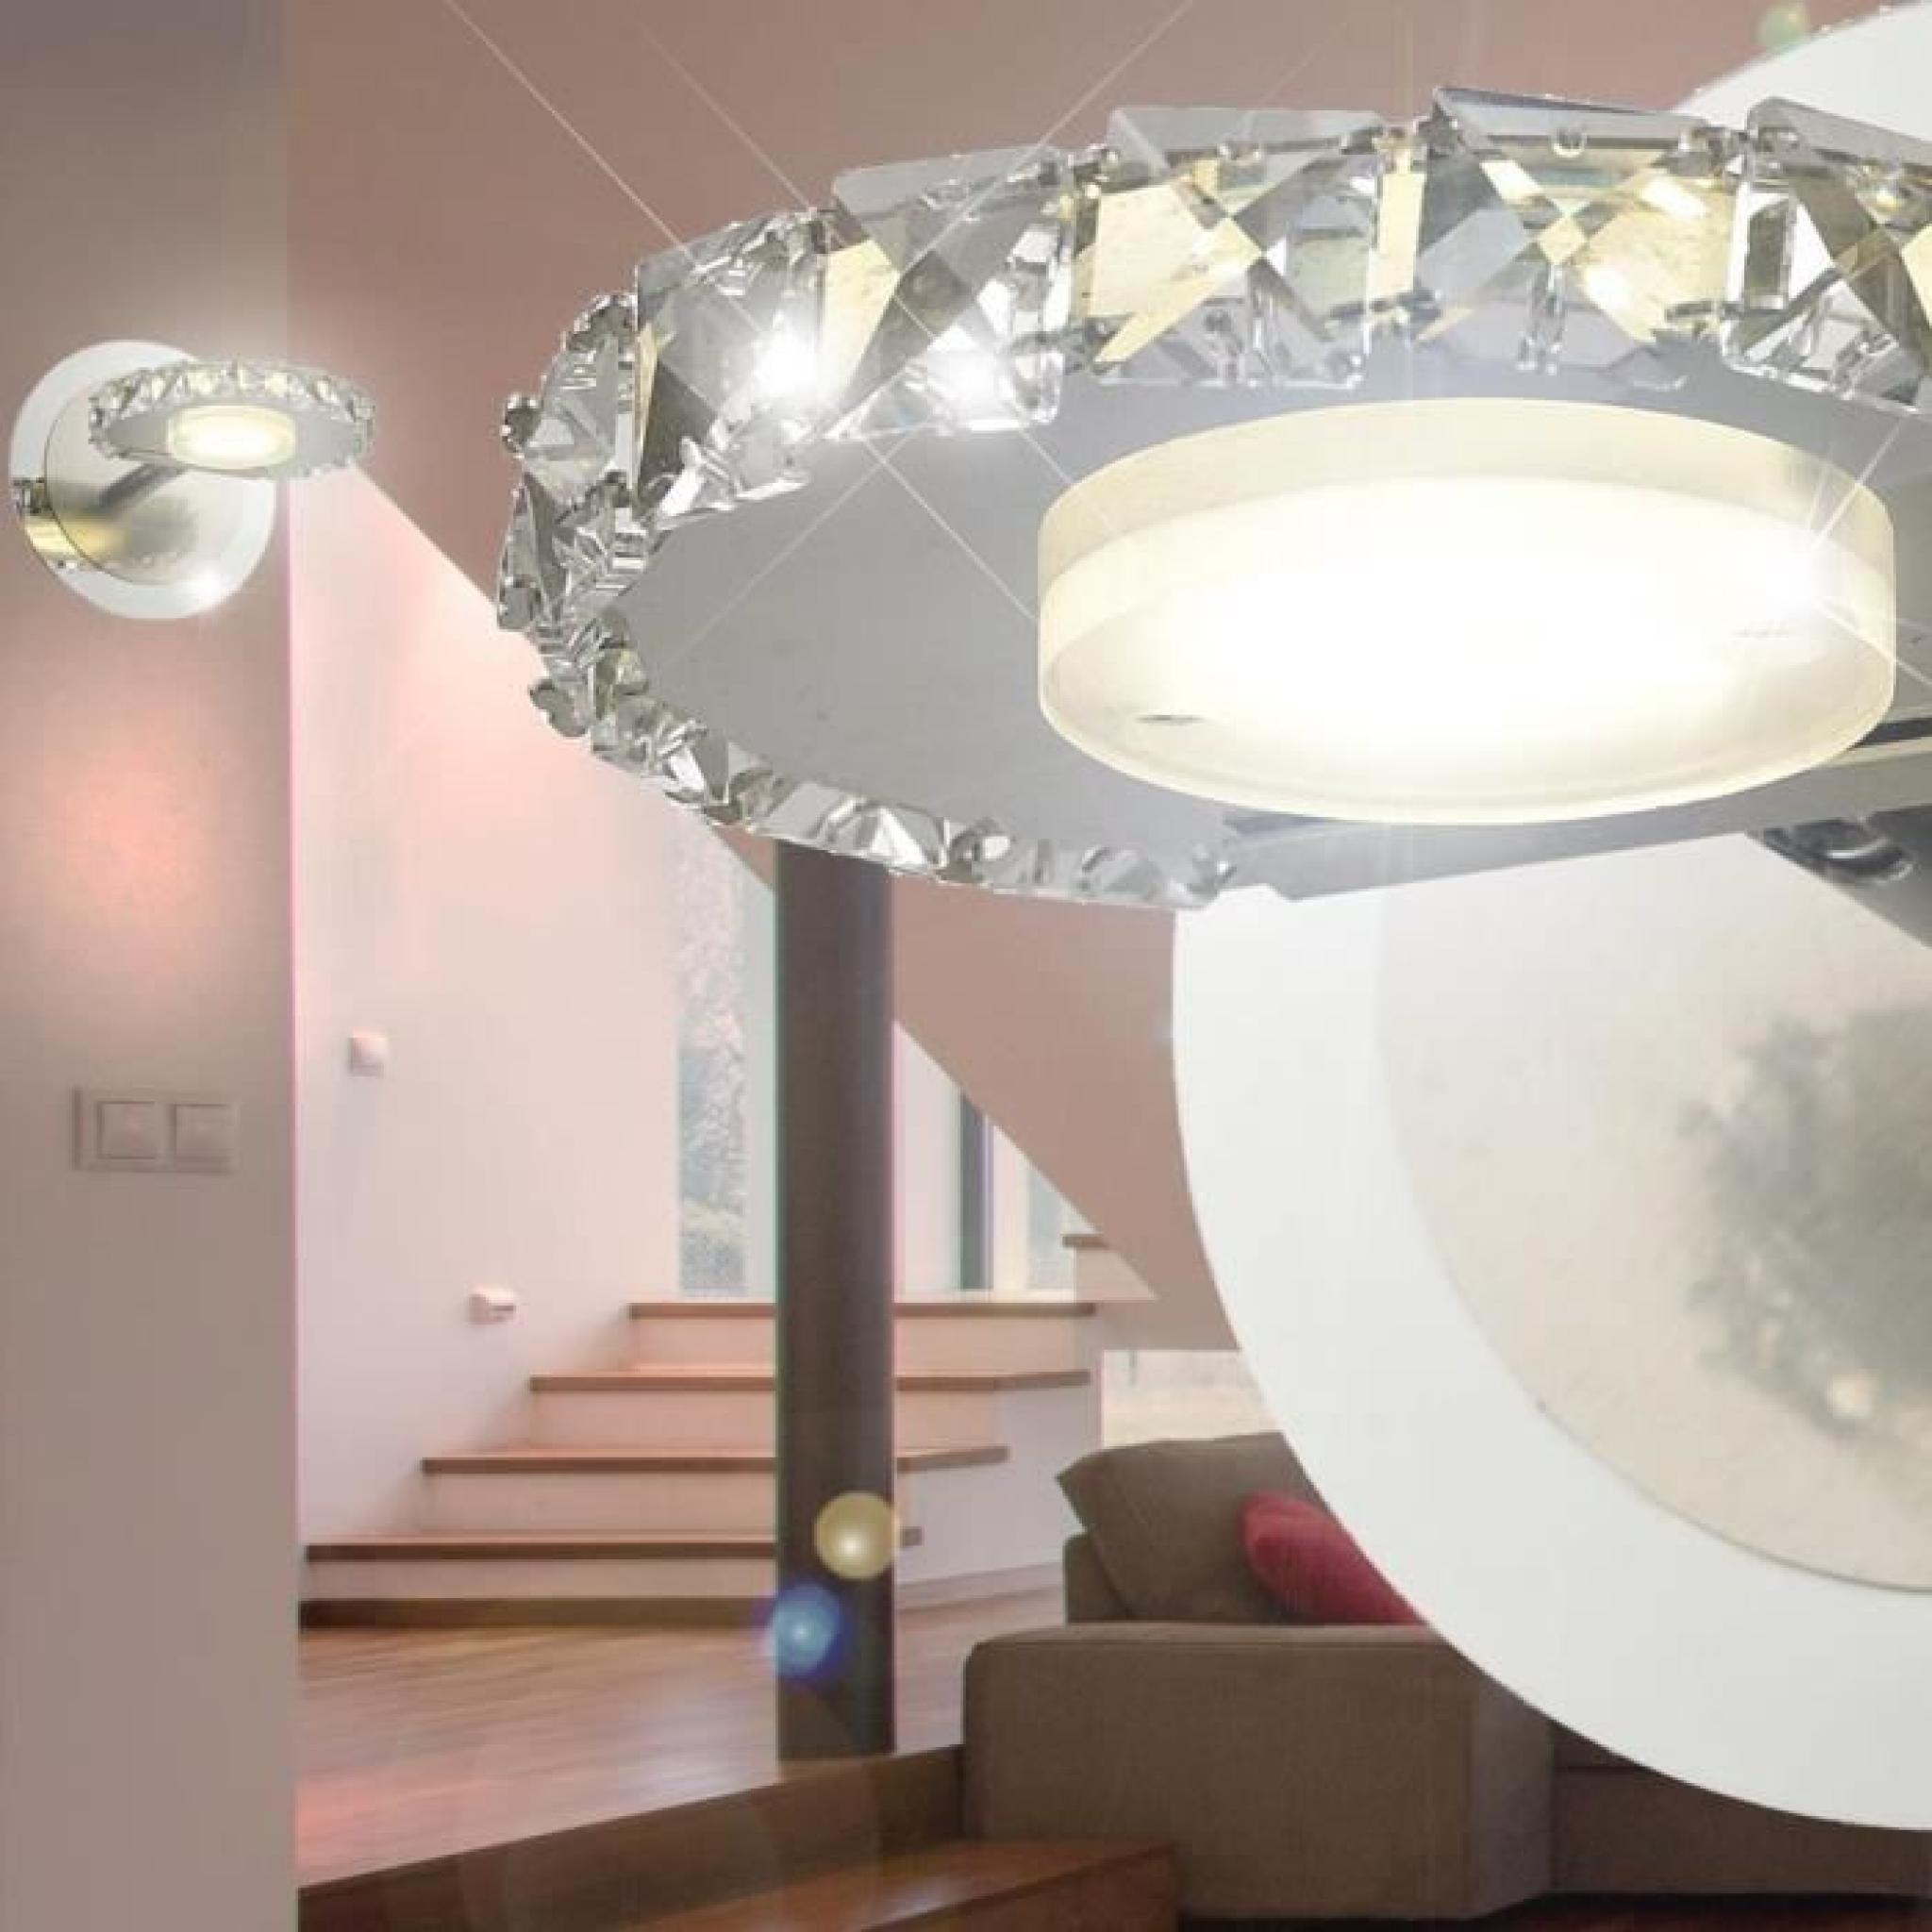 Applique LED 4 watts luminaire mural lampe cristaux verre chrome éclairage salle de séjour pas cher